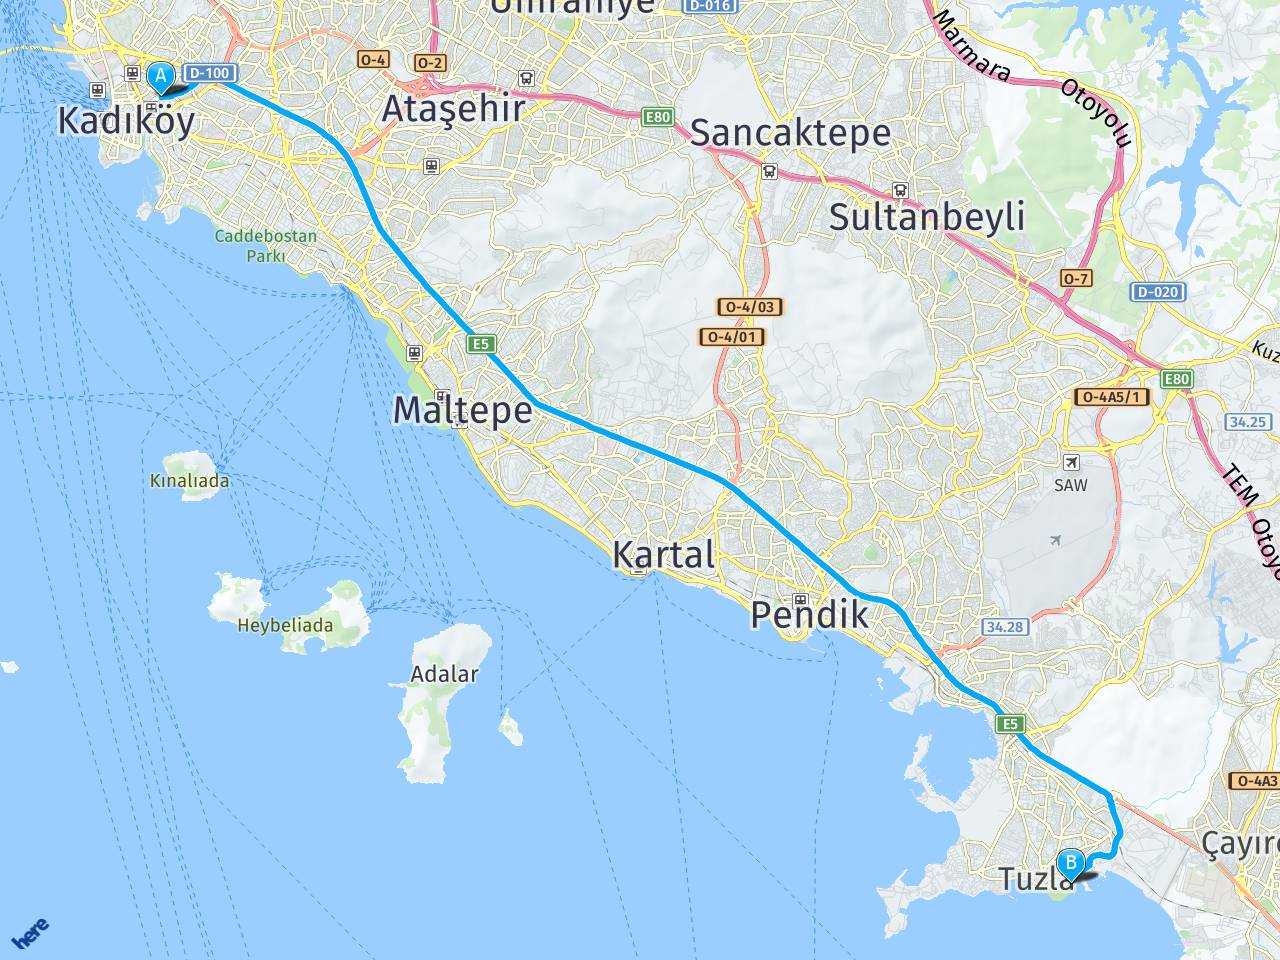 Hasanpaşa Kadıköy Tuzla Balıkçısı haritası